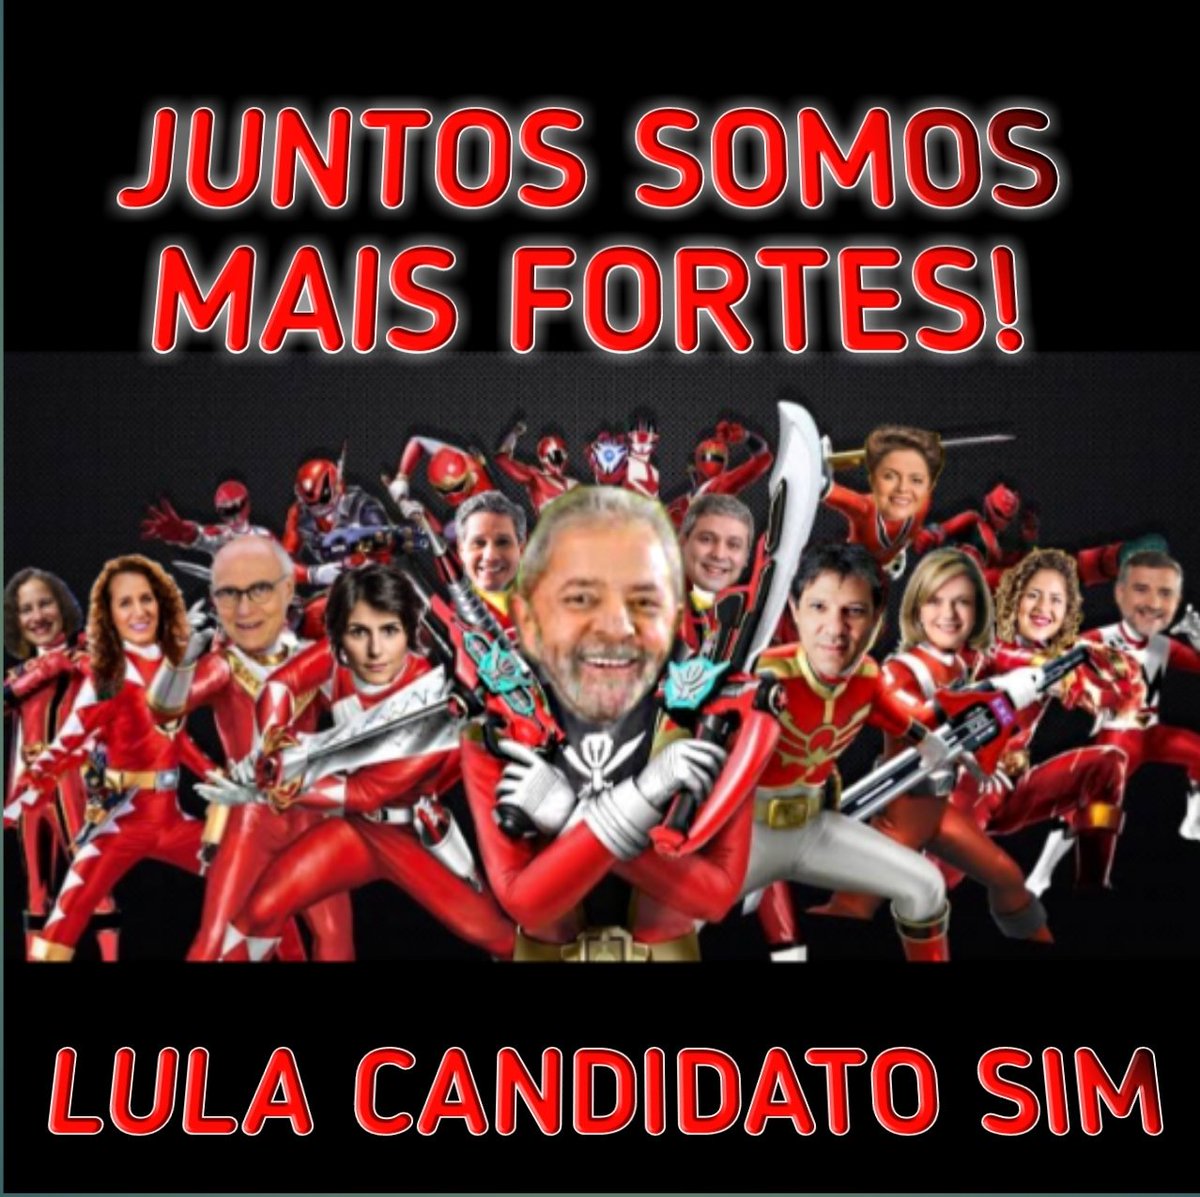 É hoje (15), às 16h! O grande dia chegou - Grande ato pelo registro da candidatura #LulaPresidente - #LulaCandidatoSim #LulaLivre #LulaÉCandidato #LulaZord  #OBrasilFelizDeNovo